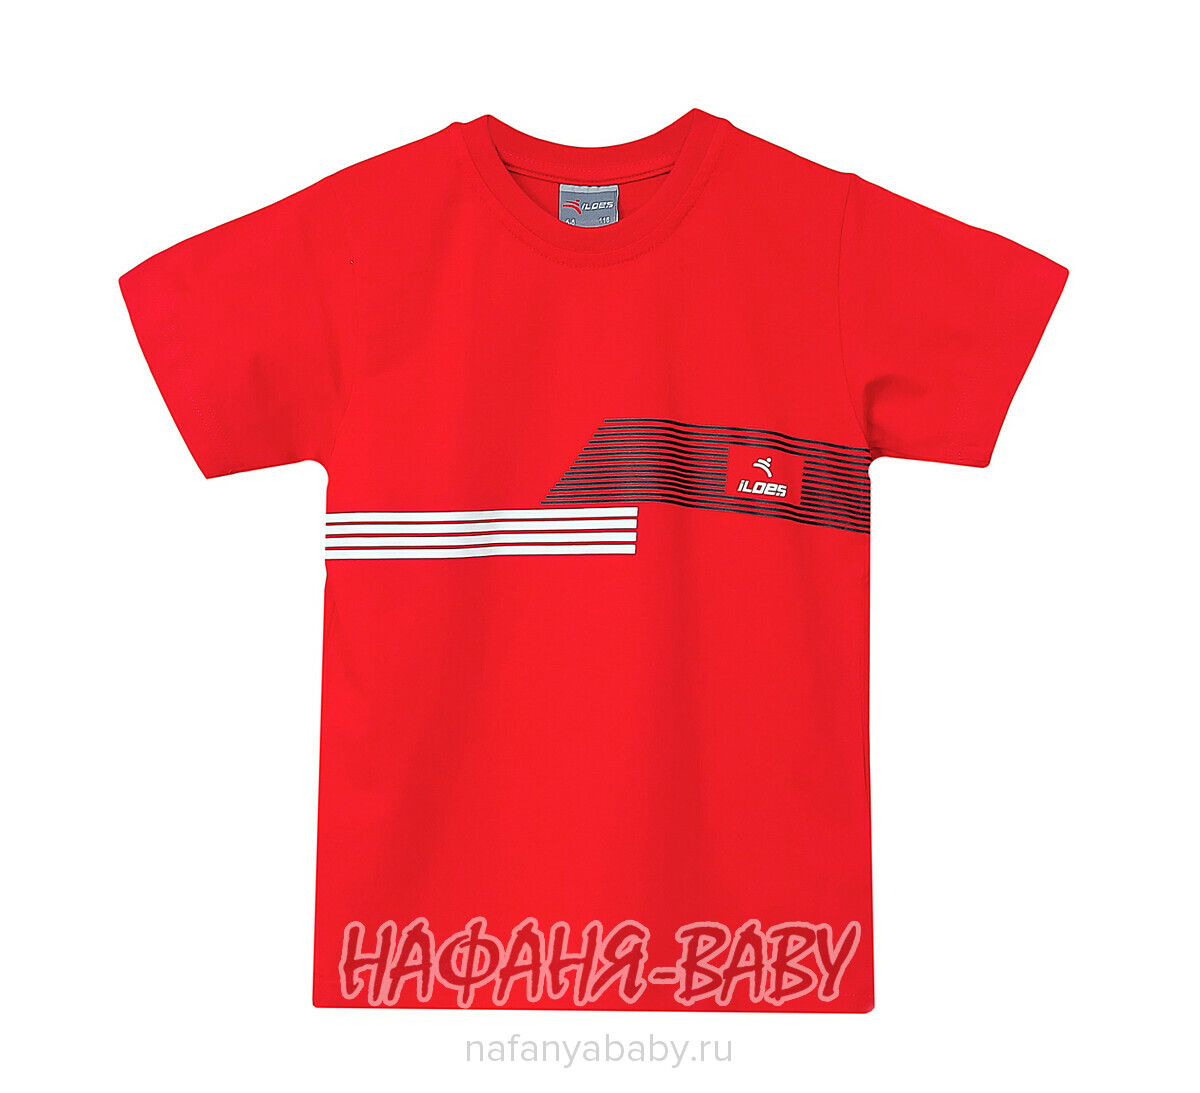 Подростковая футболка ILDES арт. 2202, 10-14 лет, цвет красный, оптом Турция